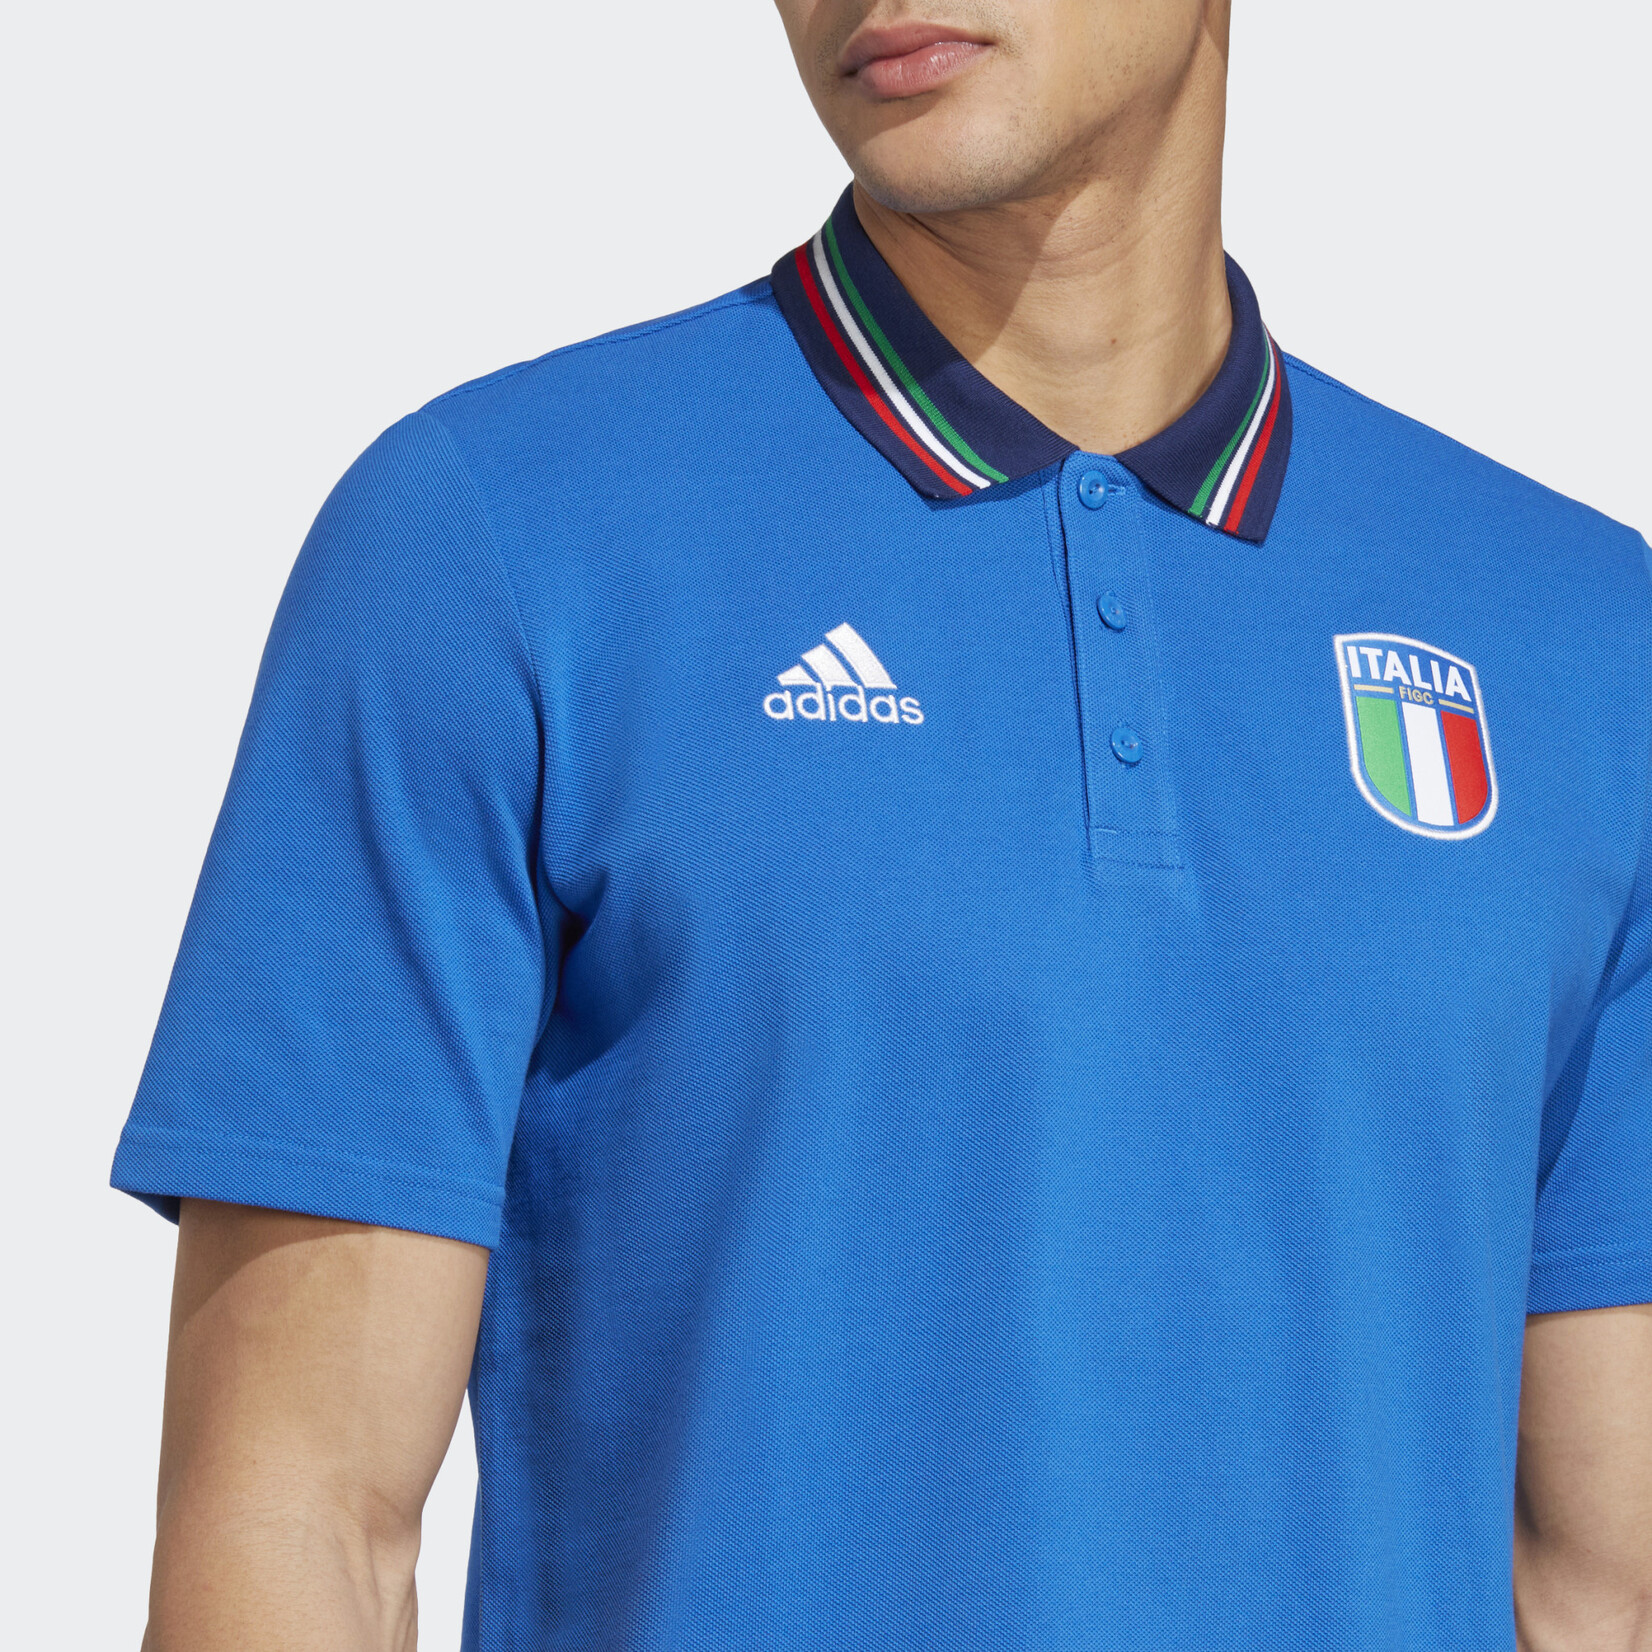 Adidas Italy Short Sleeve Polo